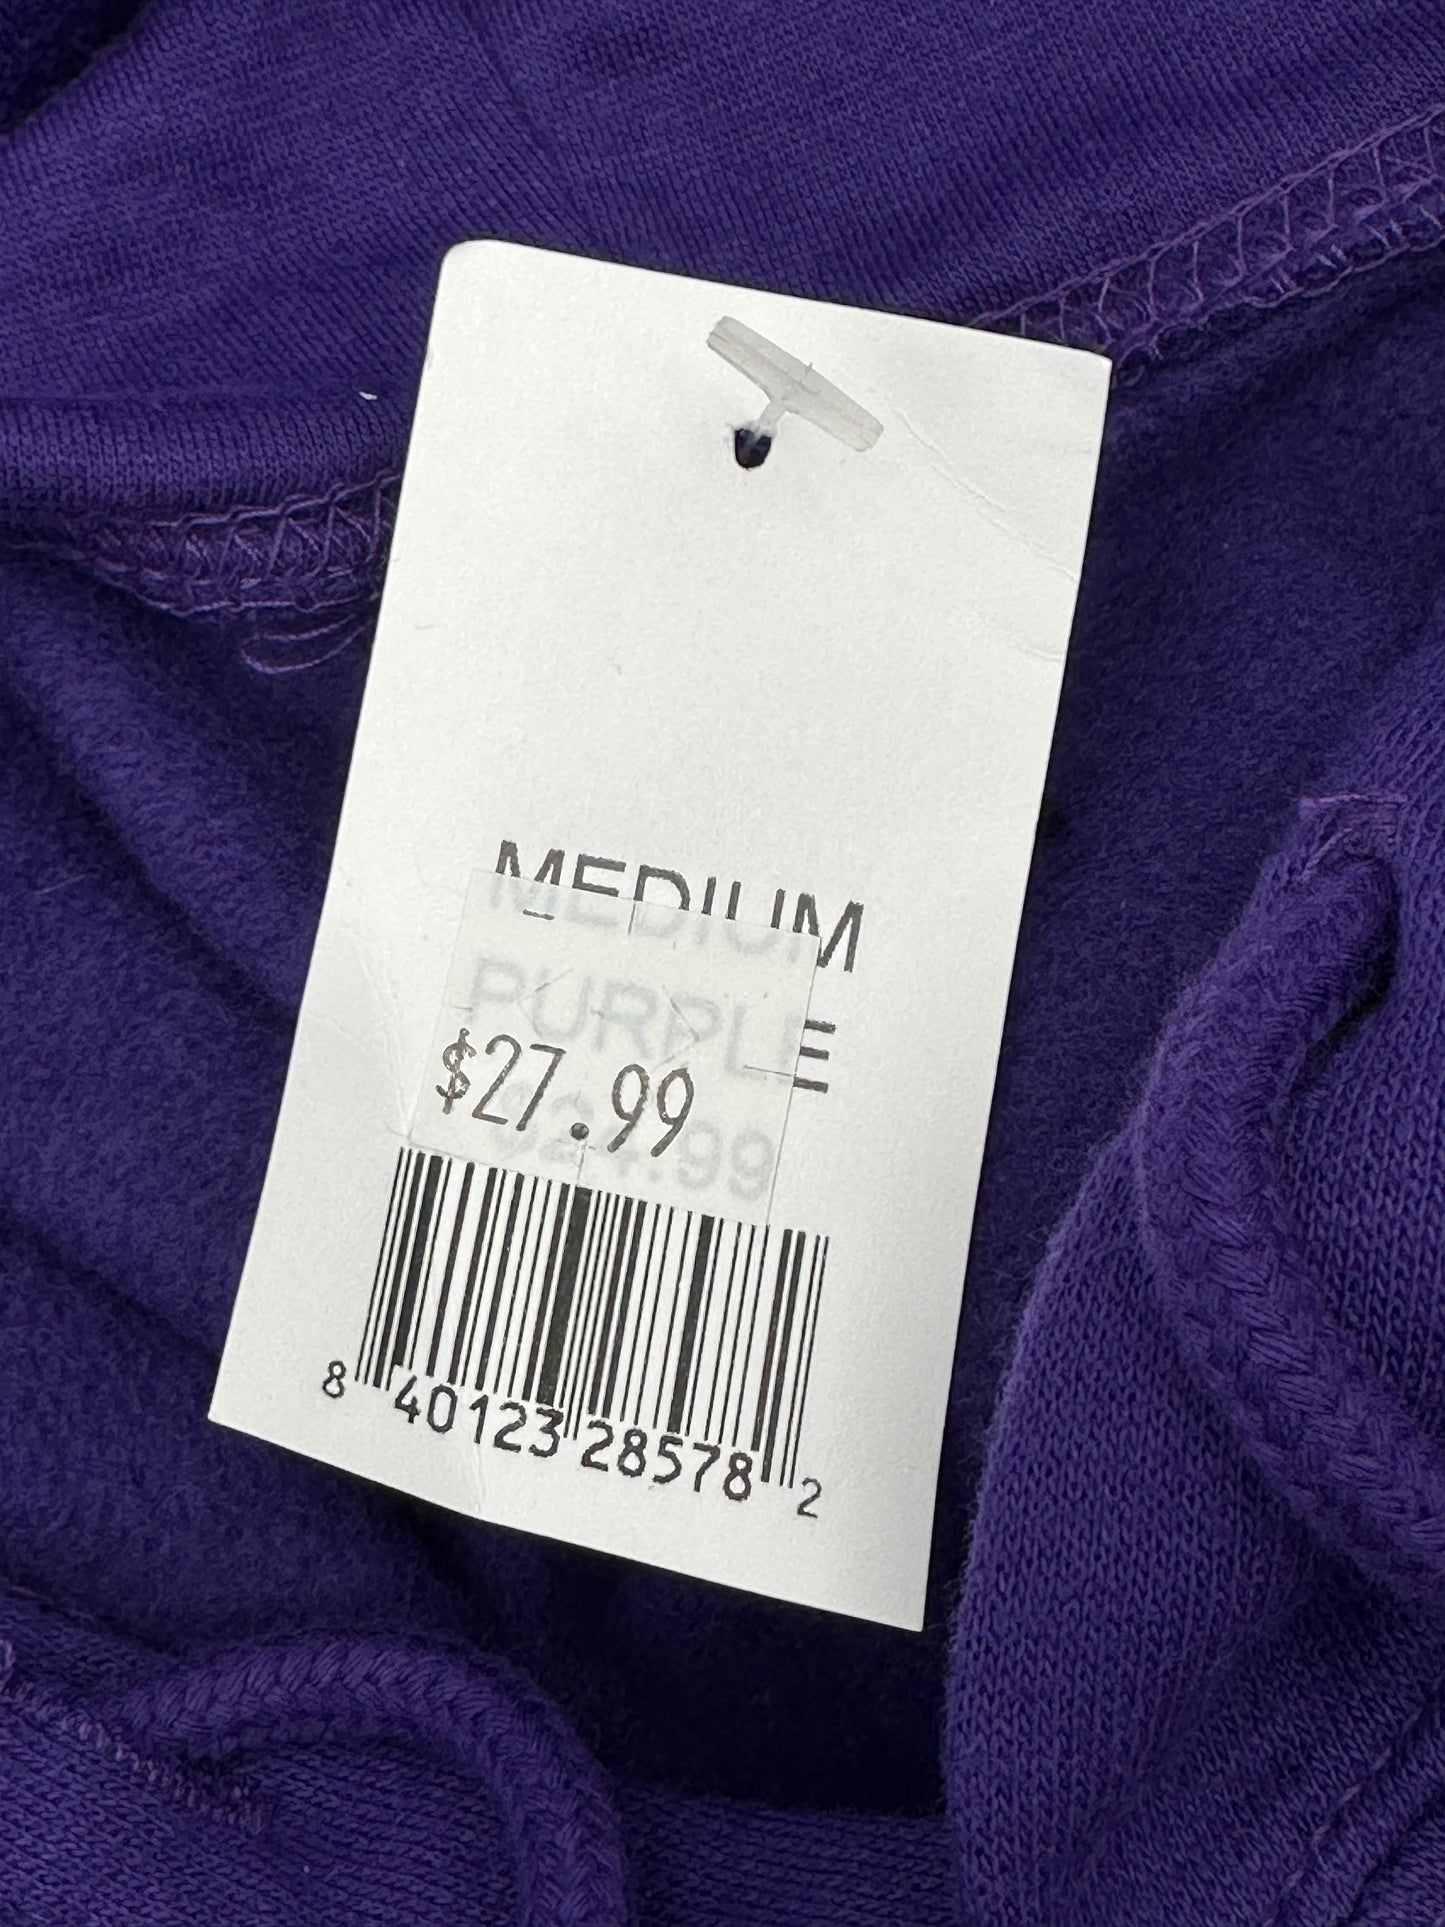 Point Sportswear Unisex Size M Purple "Arizona" Fleece Hoodie, new/NWT